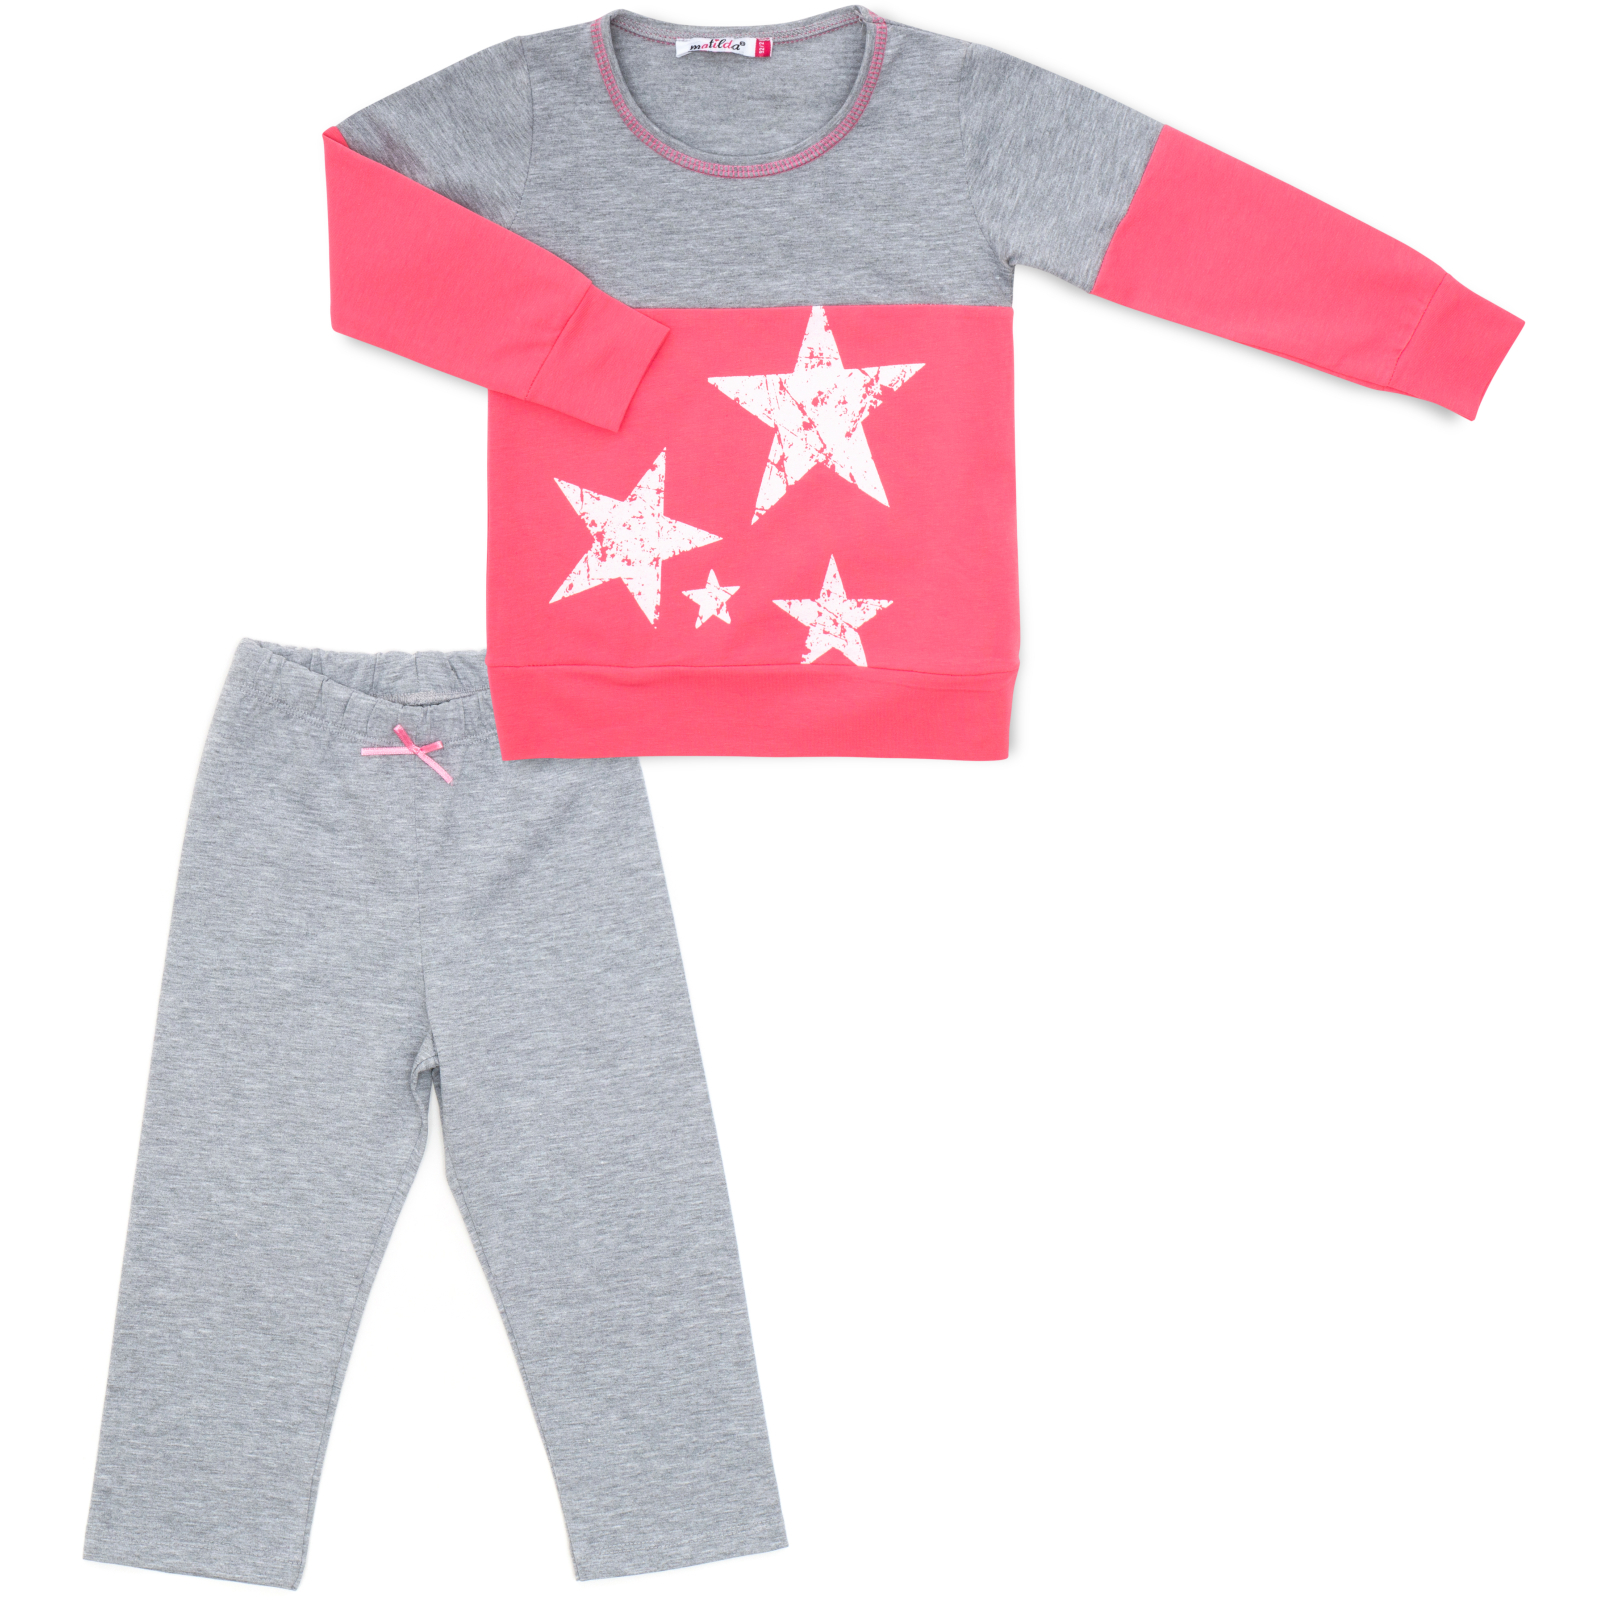 Пижама Matilda со звездочками (7167-98G-pink)